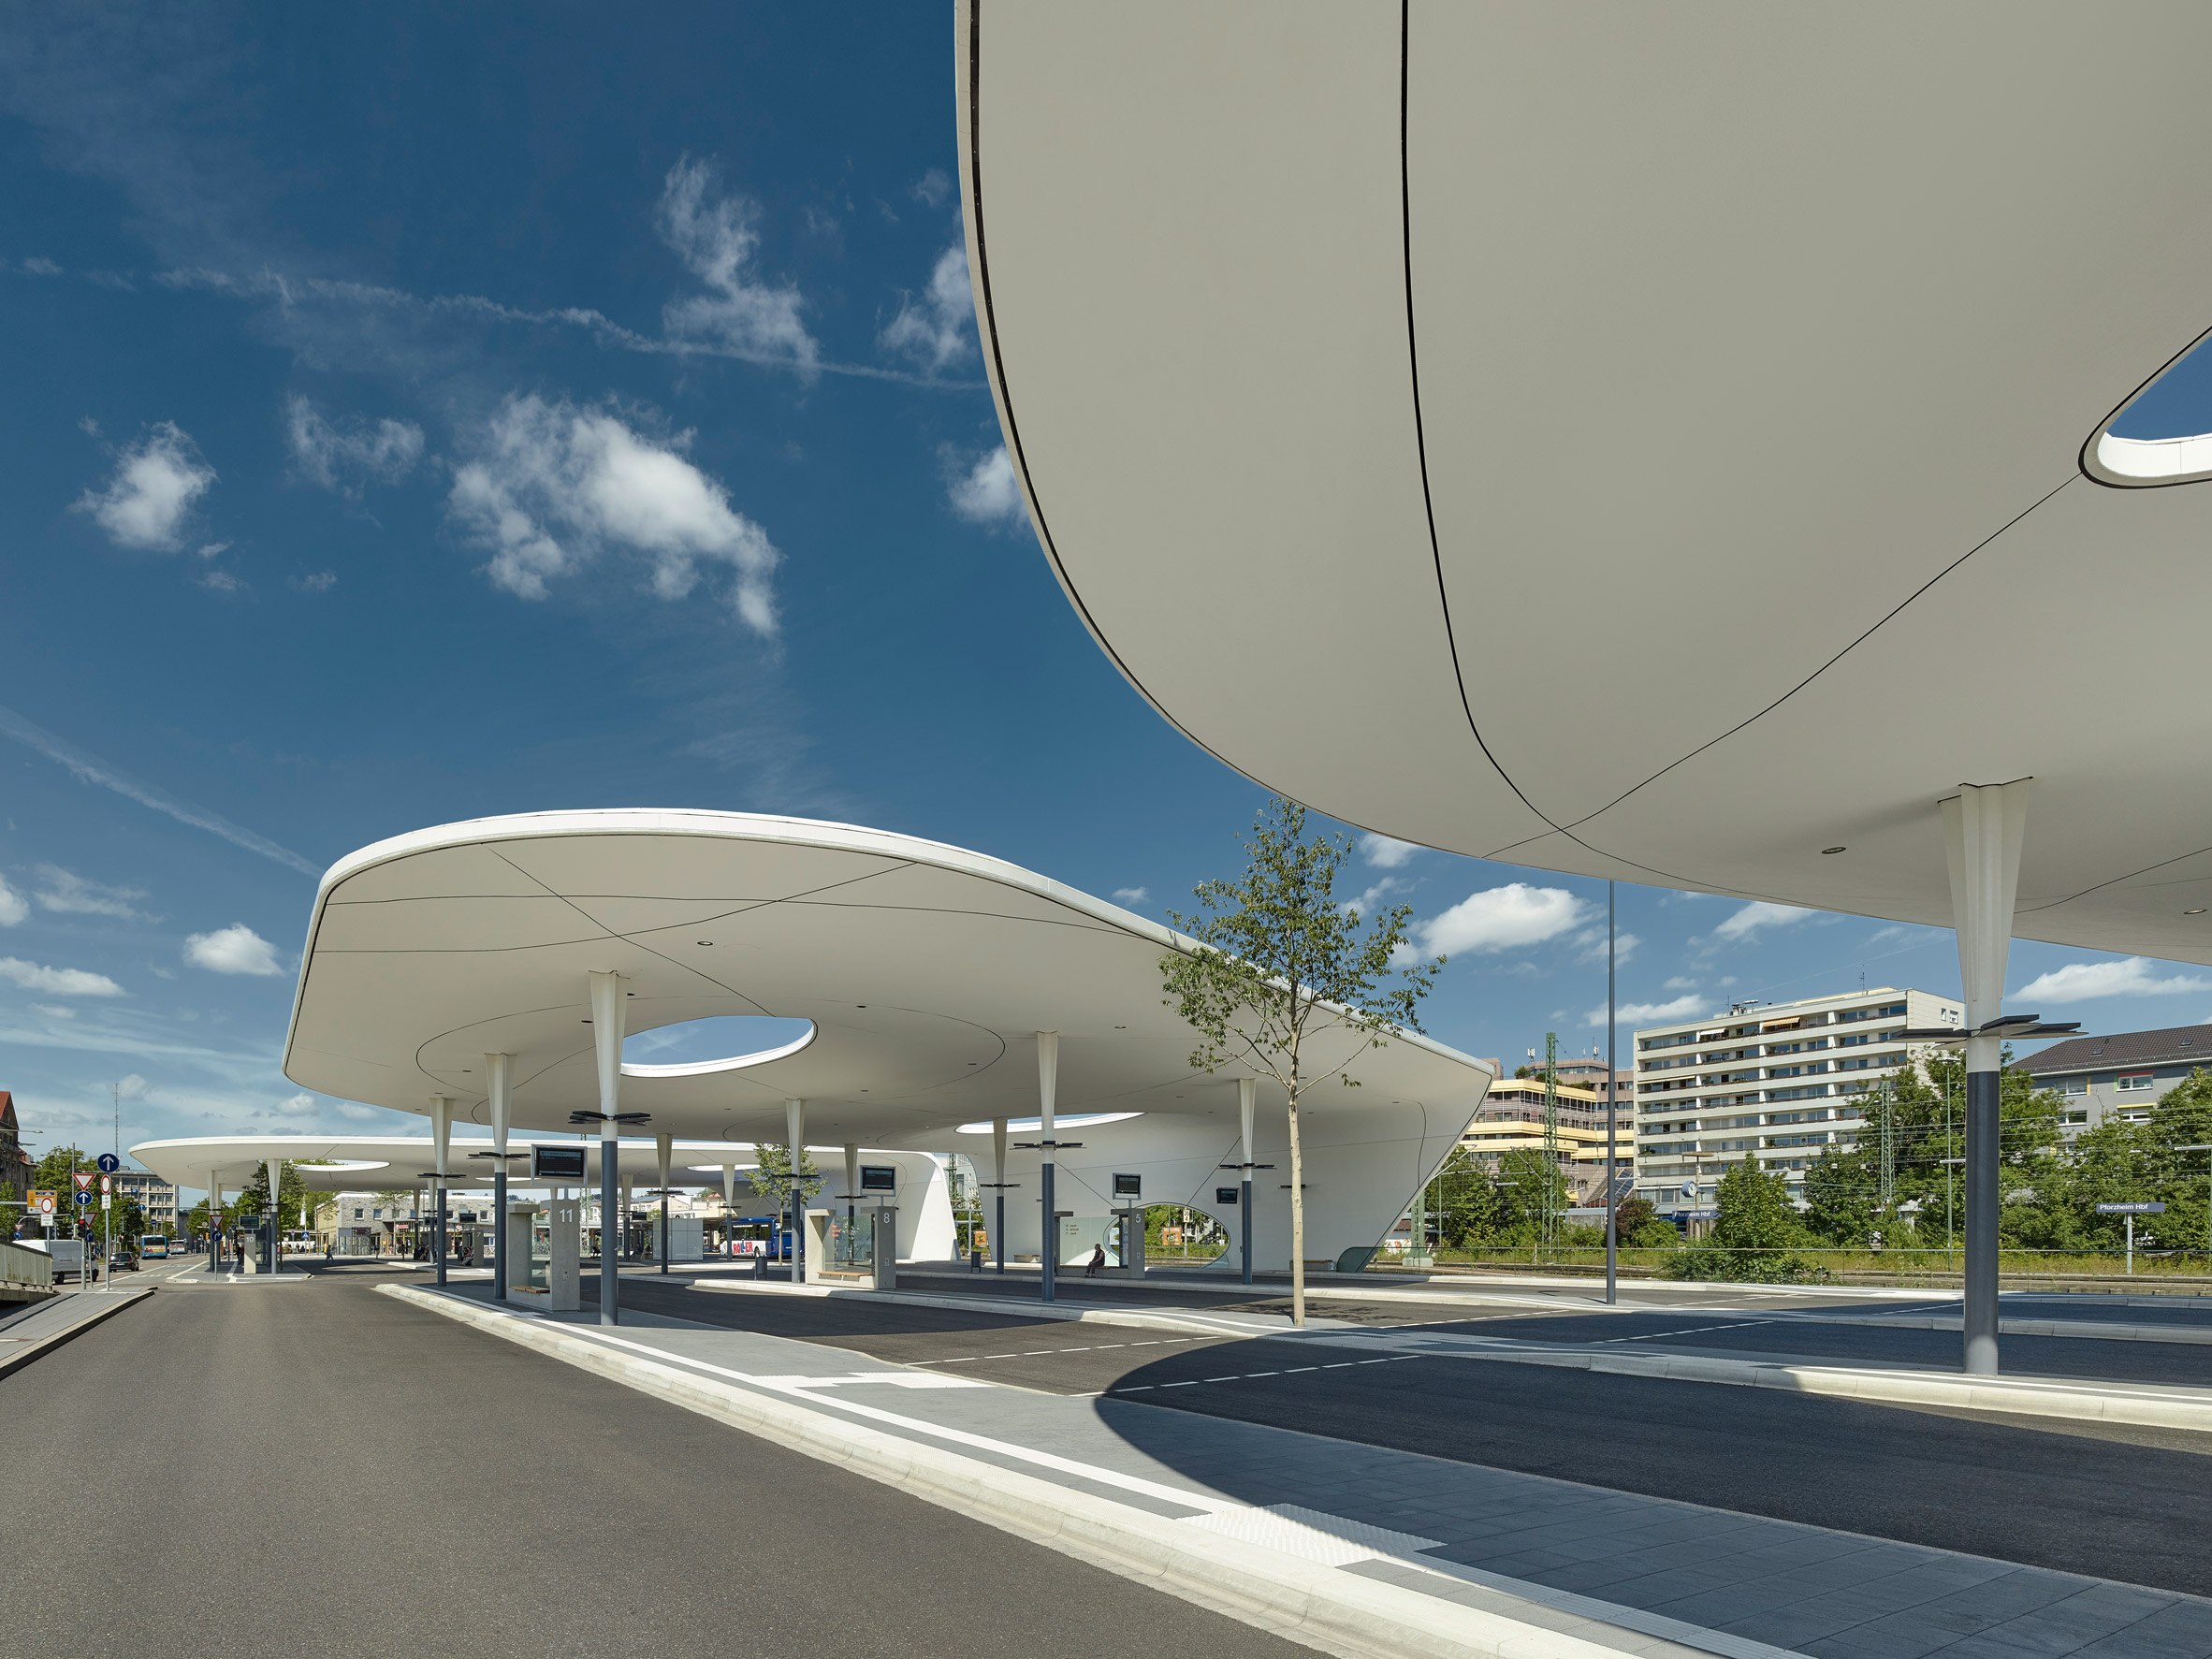 Central Bus Station by Metaraum Architekten